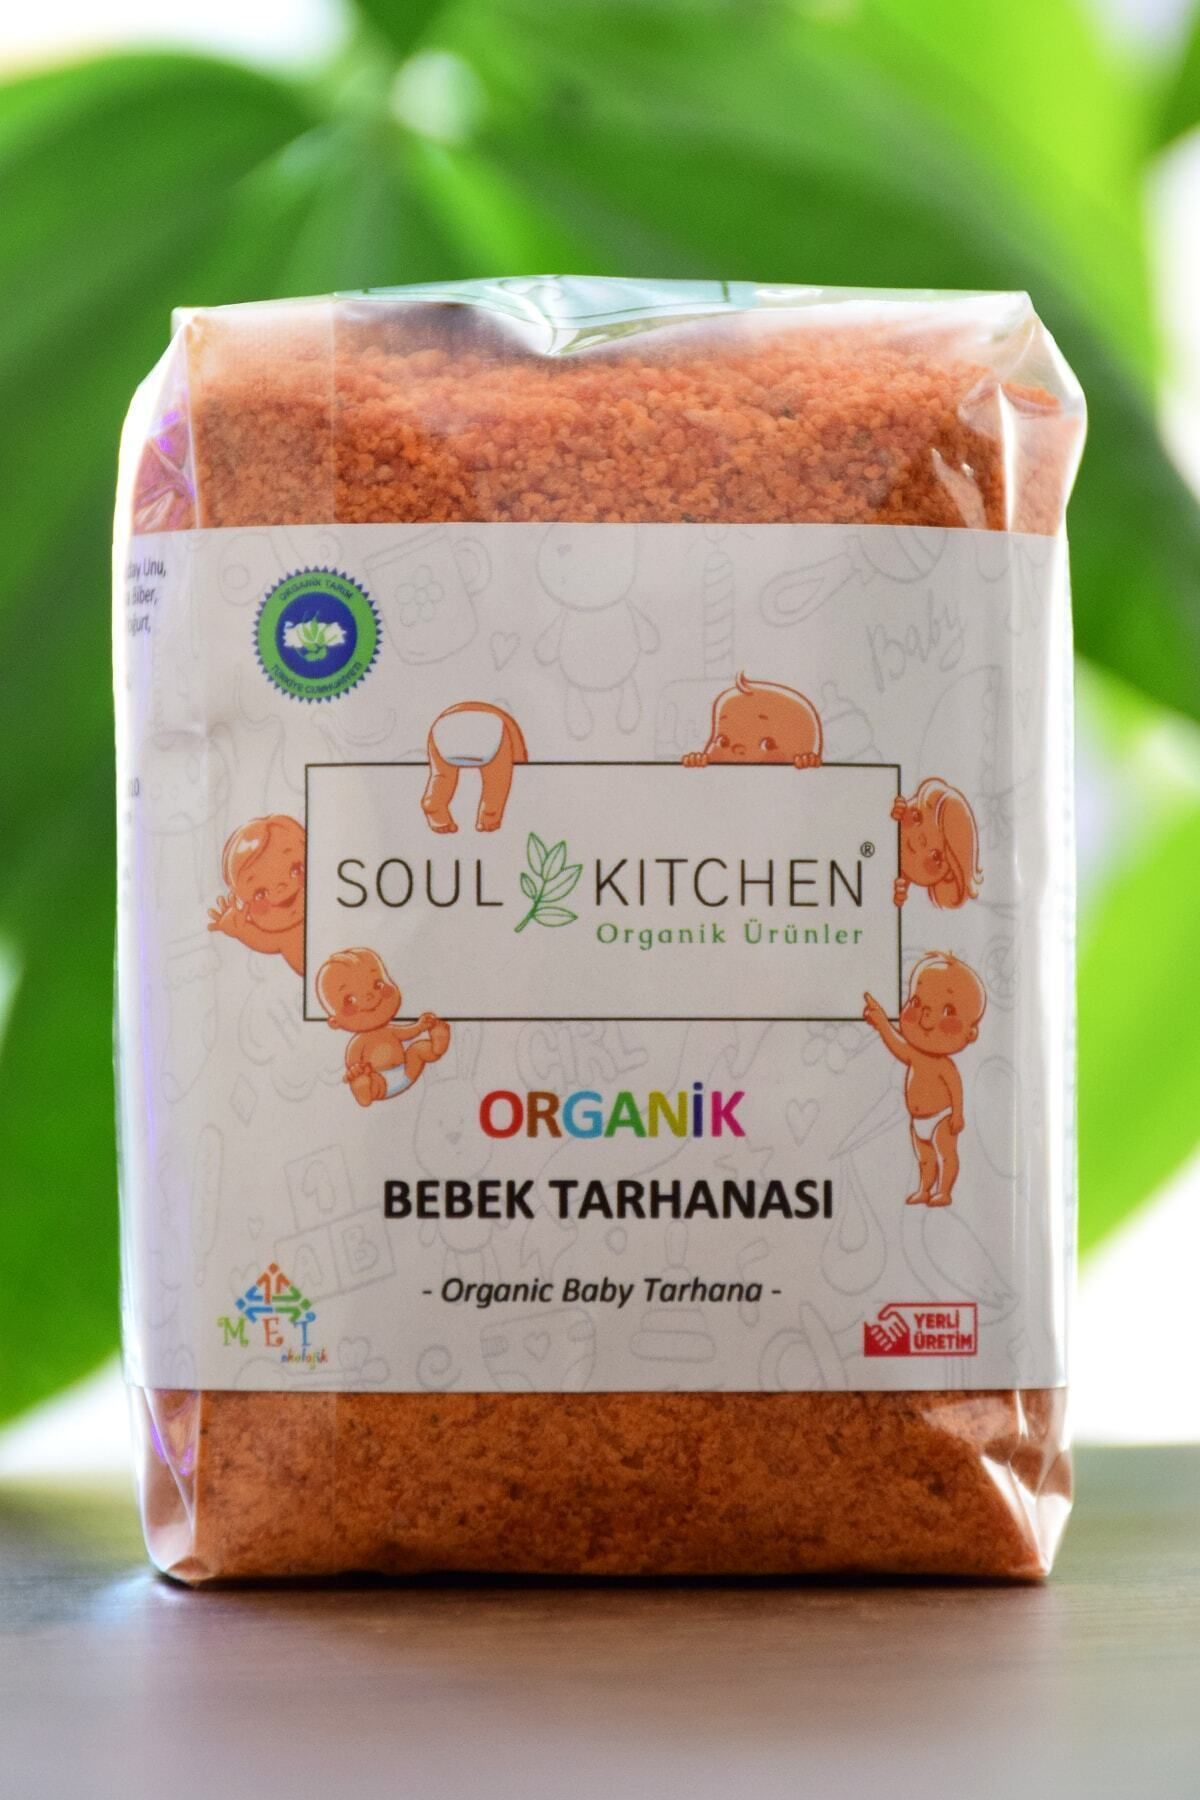 Soul Kitchen Organik Ürünler Organik Bebek Tarhanası 250gr